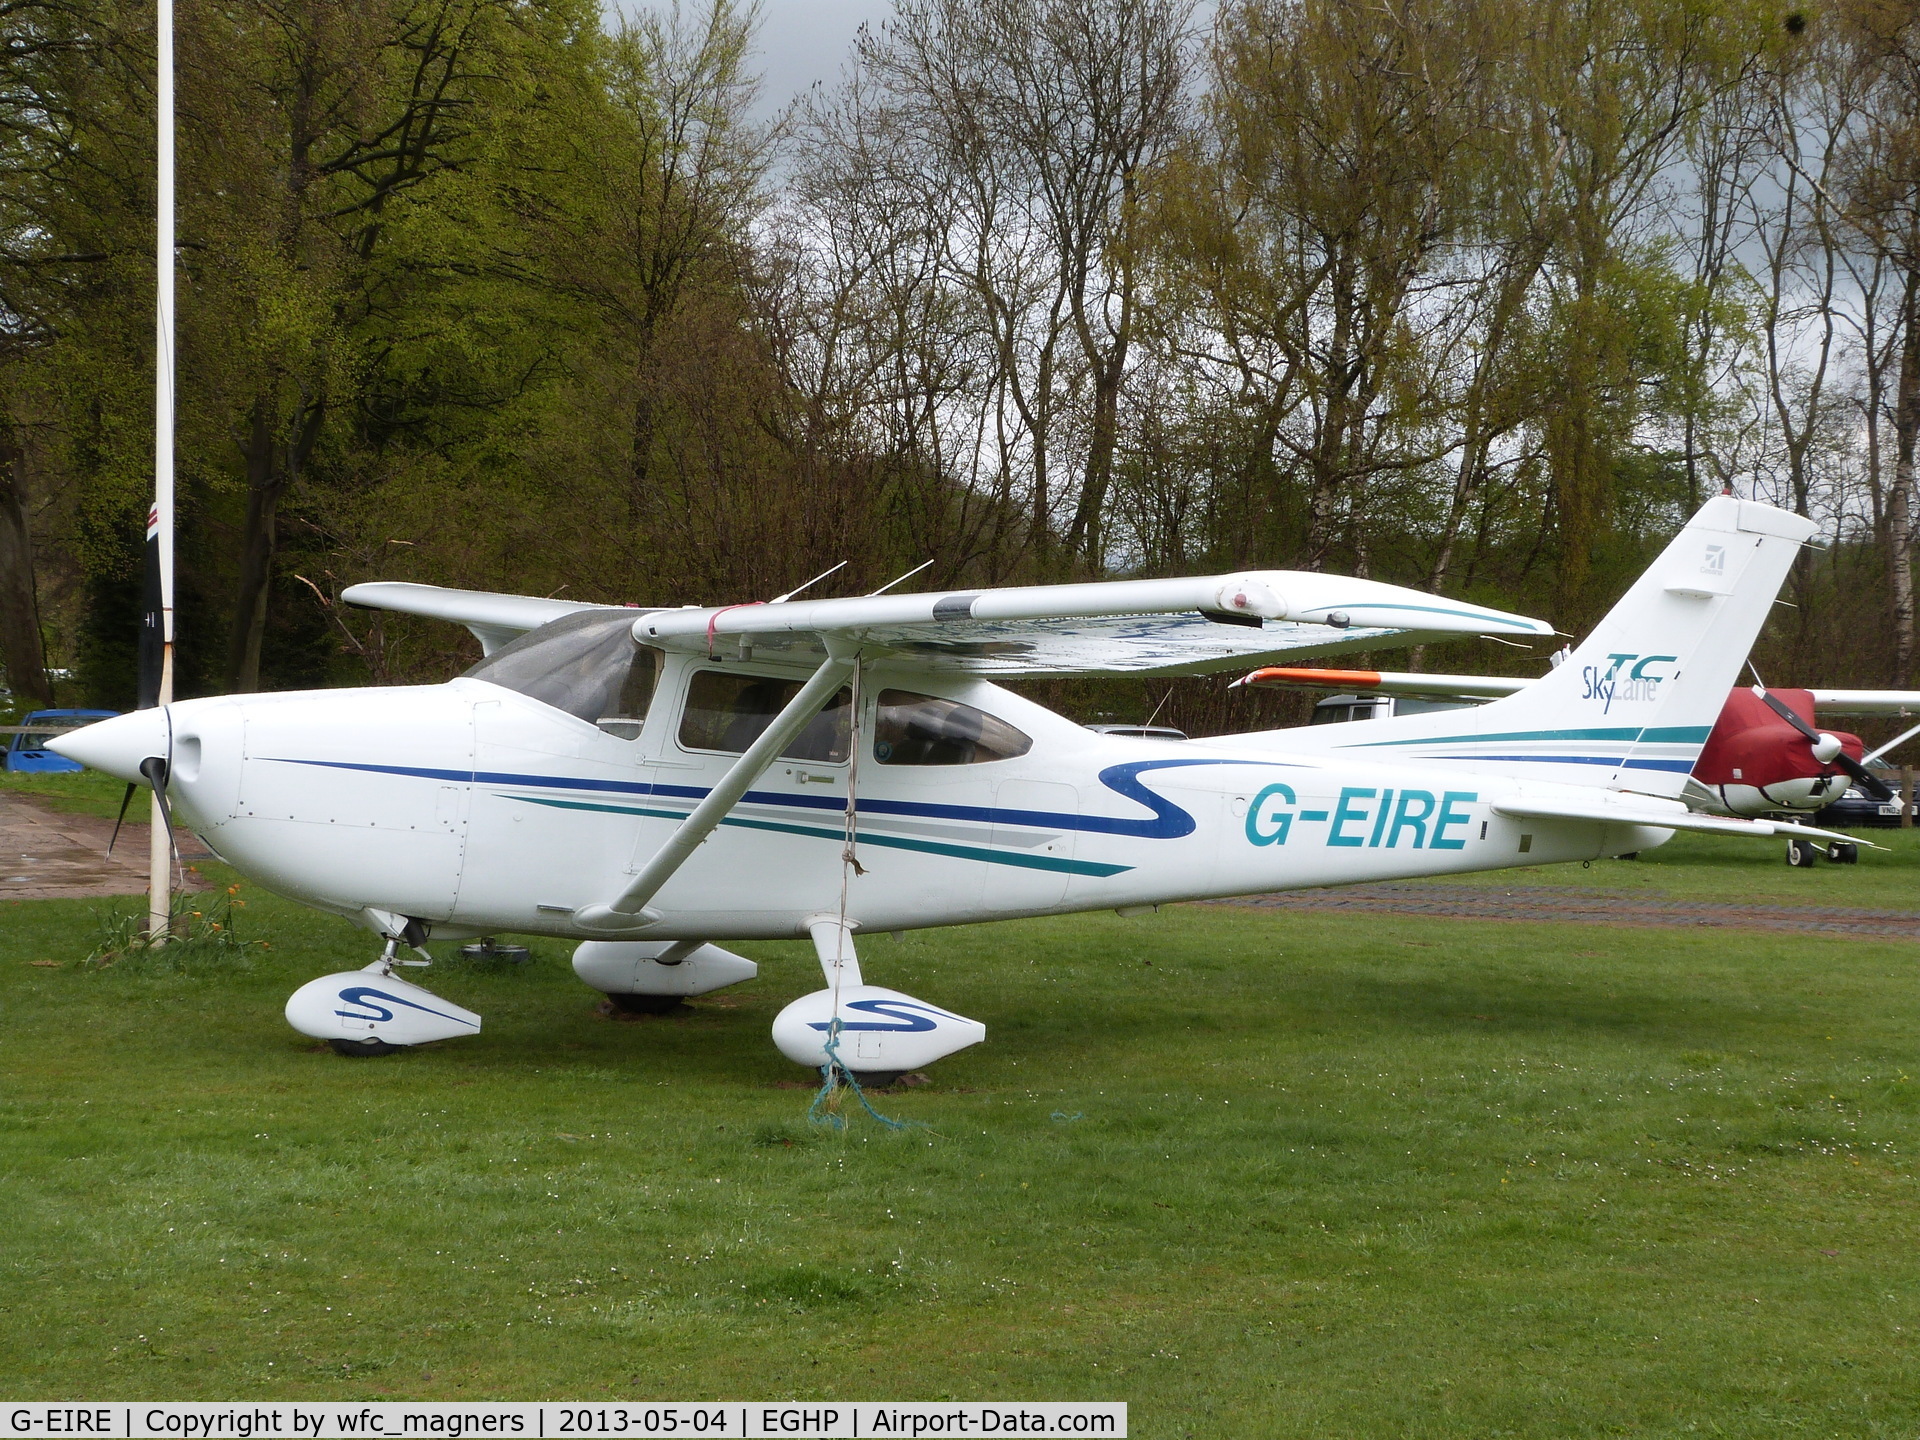 G-EIRE, 2001 Cessna T182T Turbo Skylane C/N T18208049, J. Byrne.
Popham Airfield